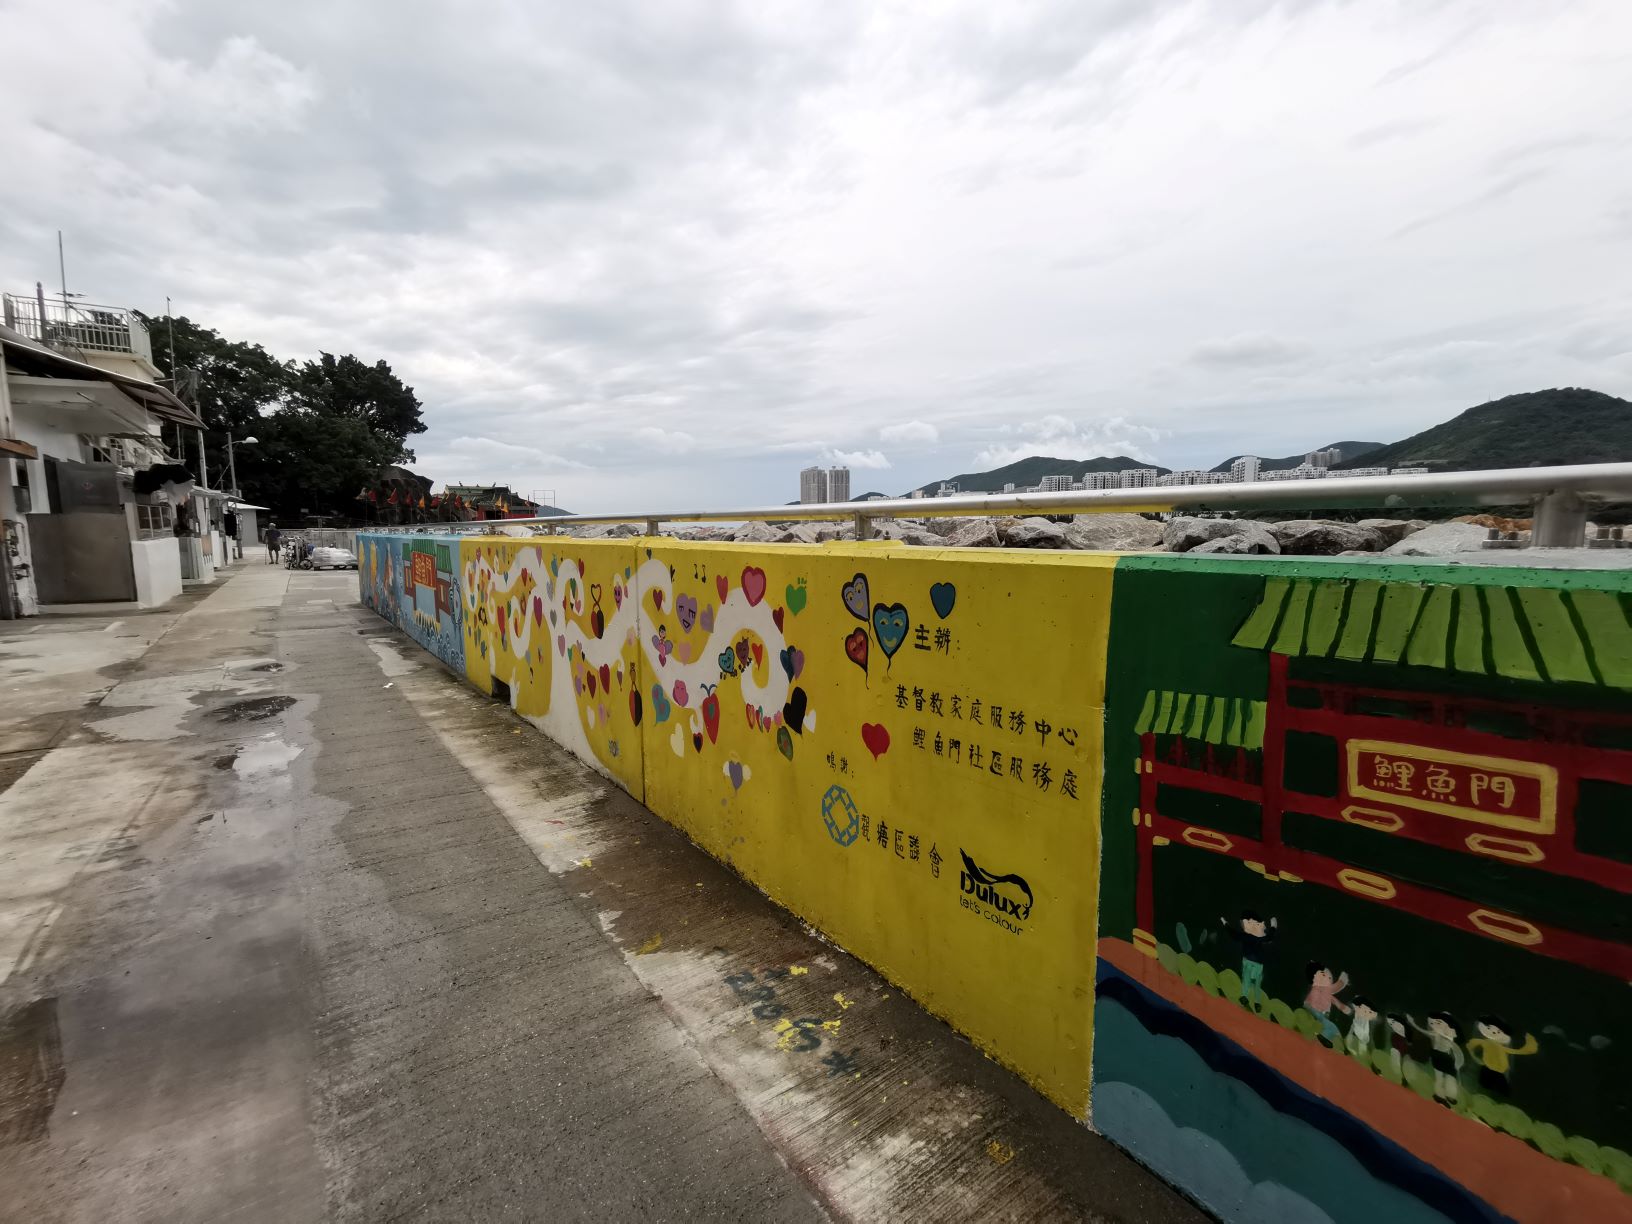 鯉魚門村民於「天鴿」後修建的擋浪牆上畫的壁畫。© Greenpeace